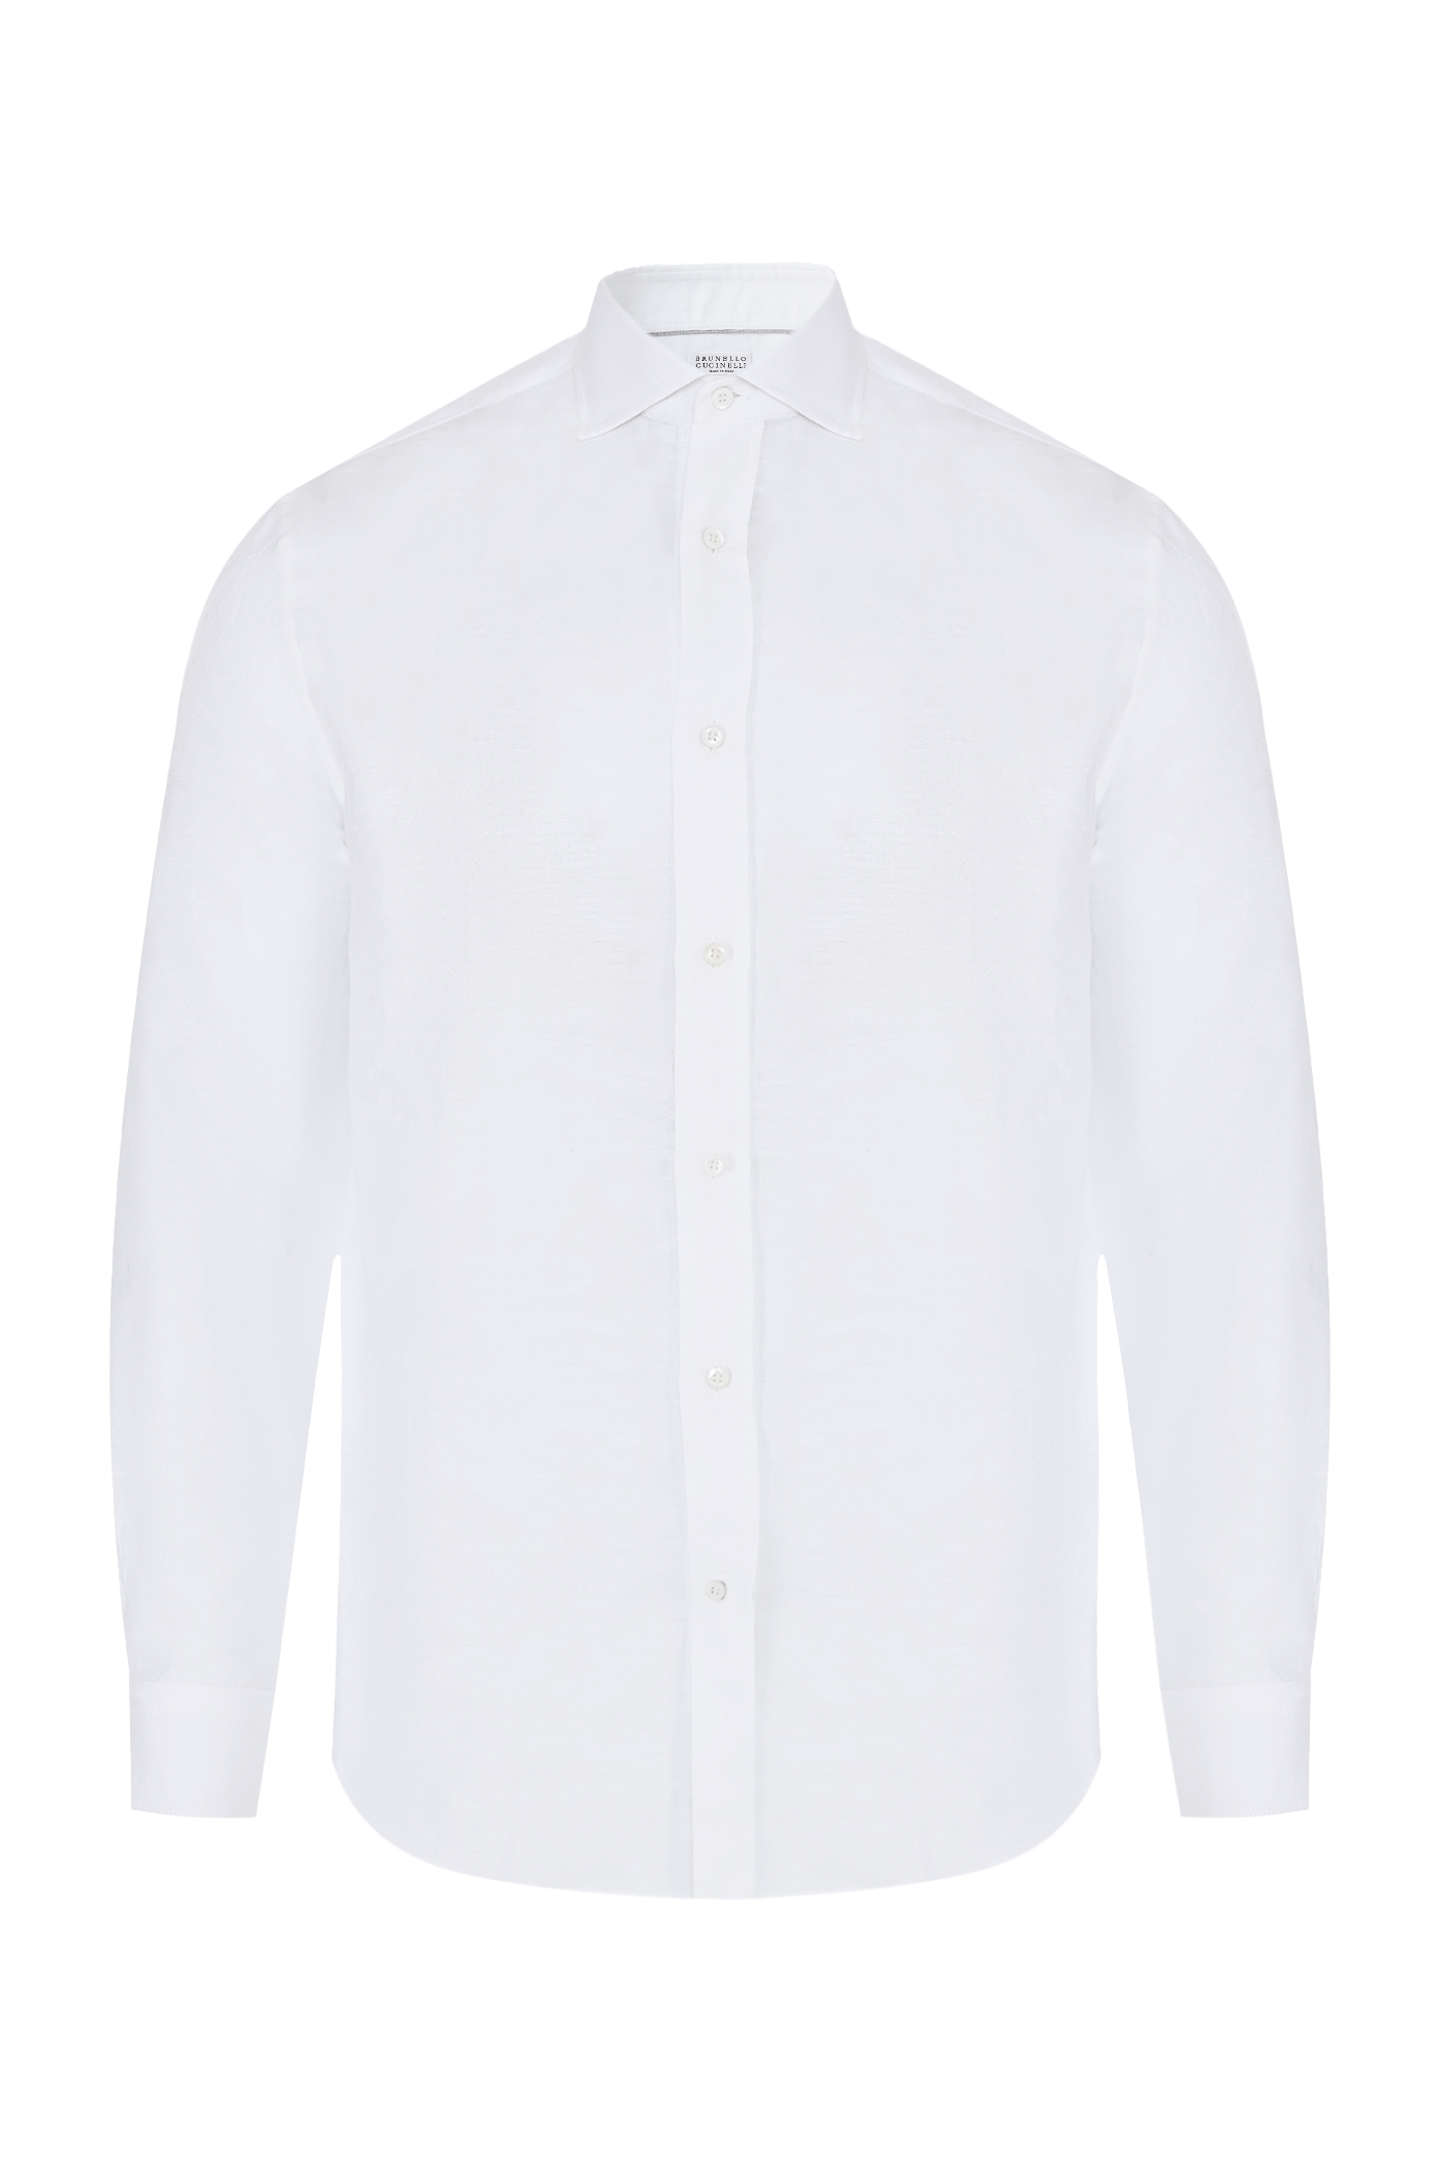 Рубашка из хлопка и льна с косым воротом BRUNELLO  CUCINELLI MM6320627, цвет: Белый, Мужской